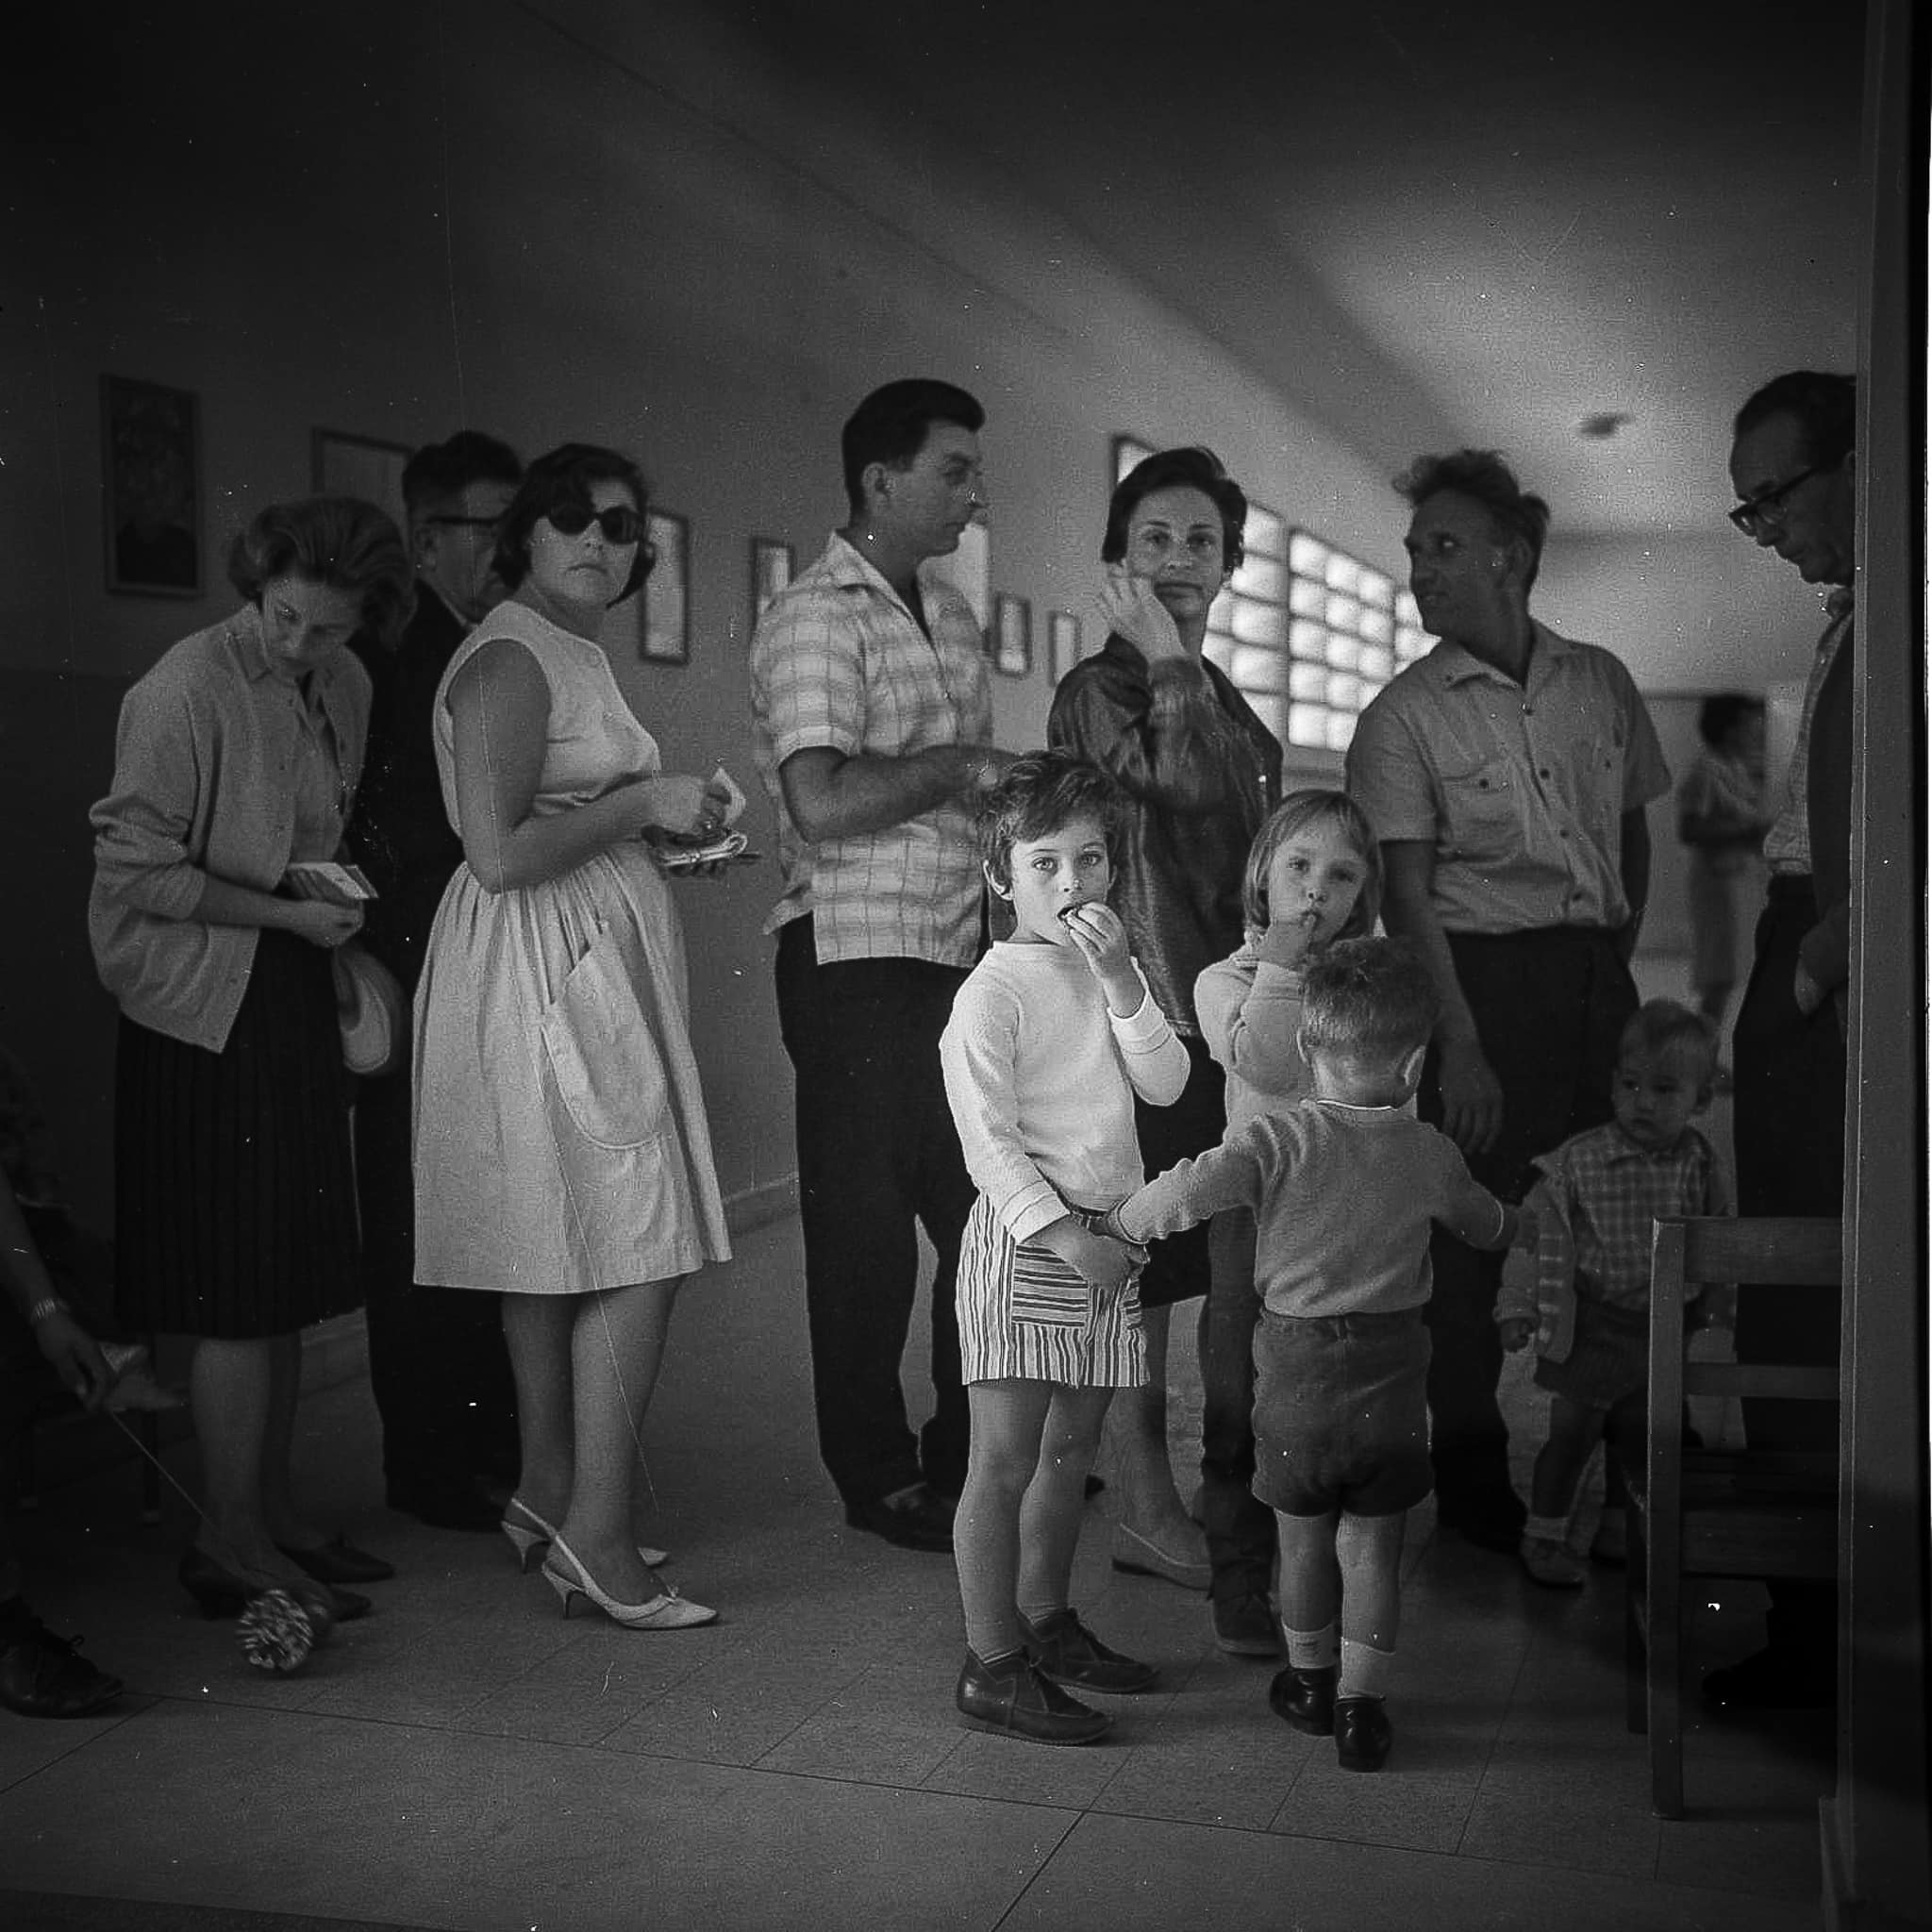 מצביעים וילדיהם עומדים בתור להצביע בקלפי בבחירות לכנסת השישית, 2 בנובמבר 1965 (צילום: ארכיון בוריס כרמי, אוסף מיתר, הספרייה הלאומית)